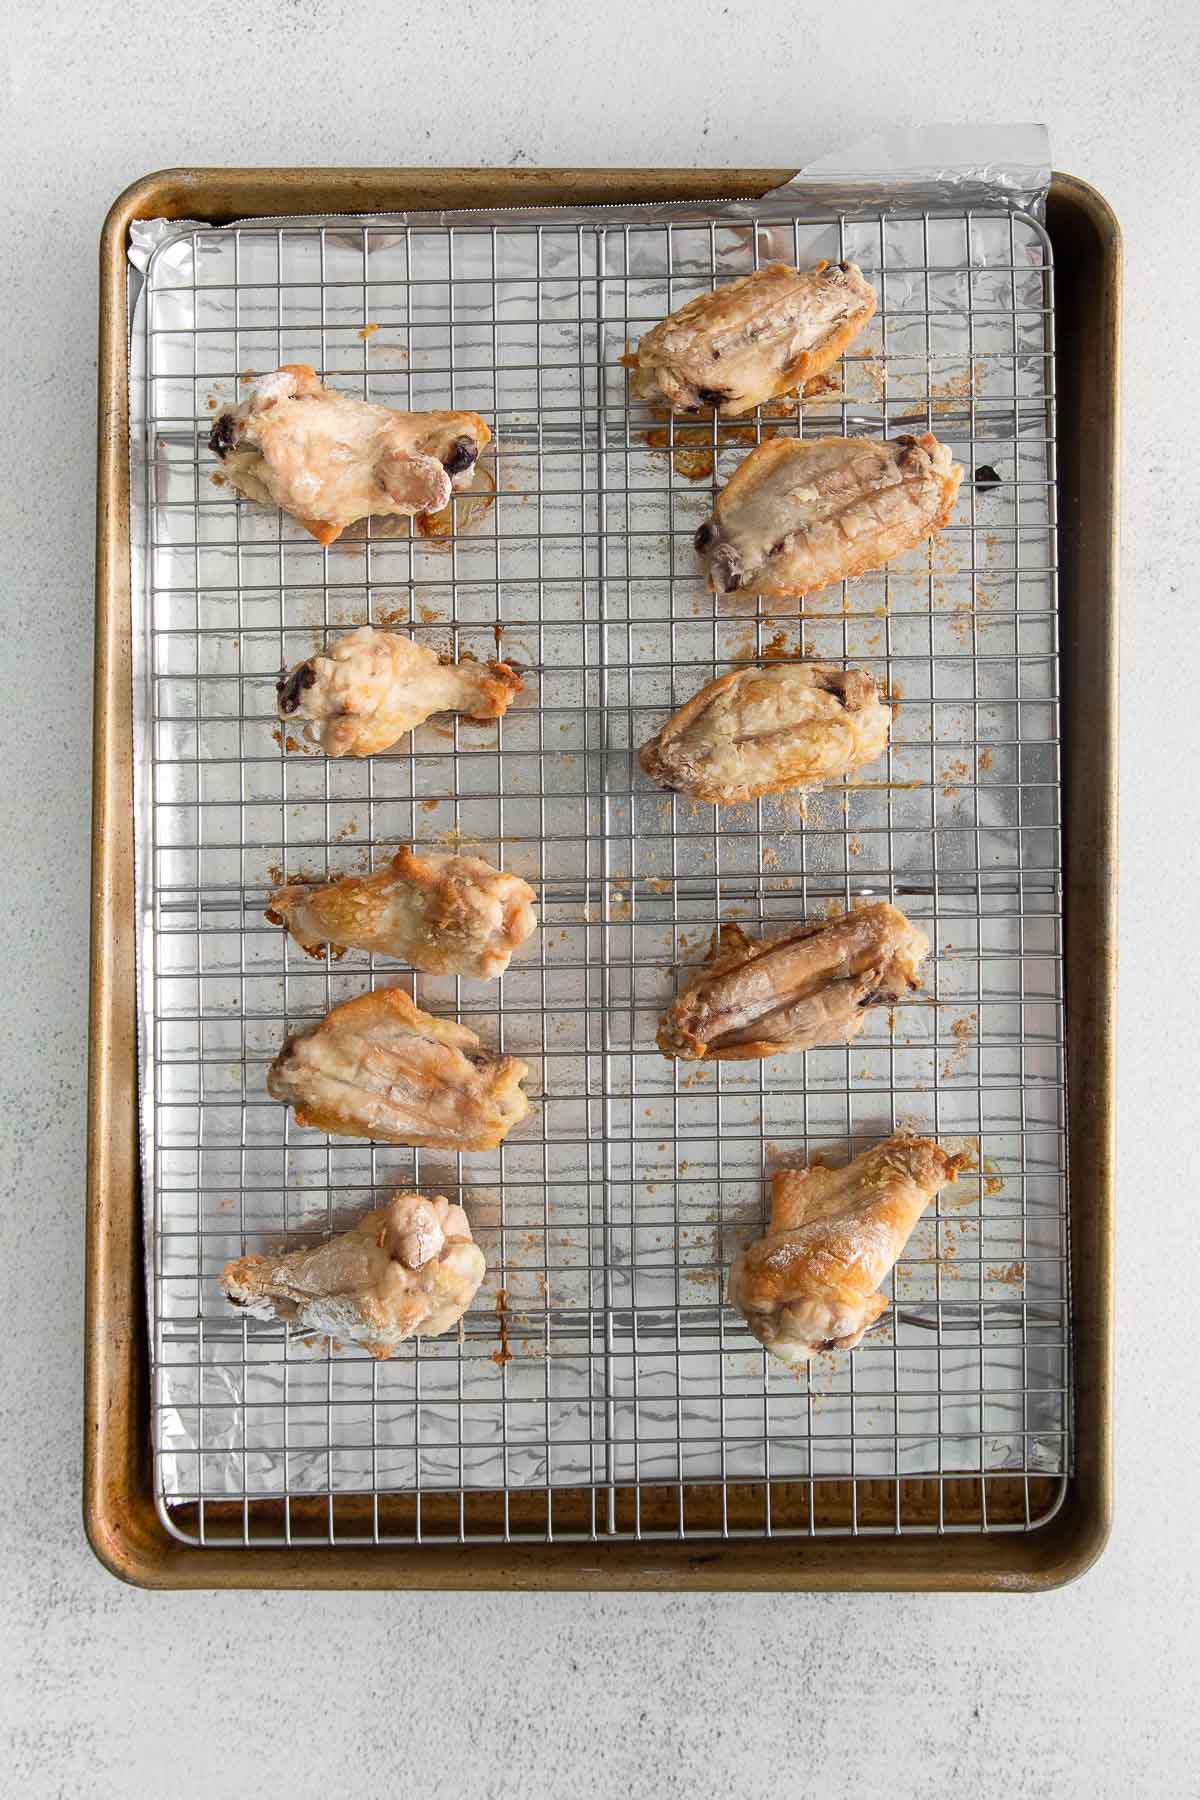 ten chicken wings on a wire rack on a baking sheet